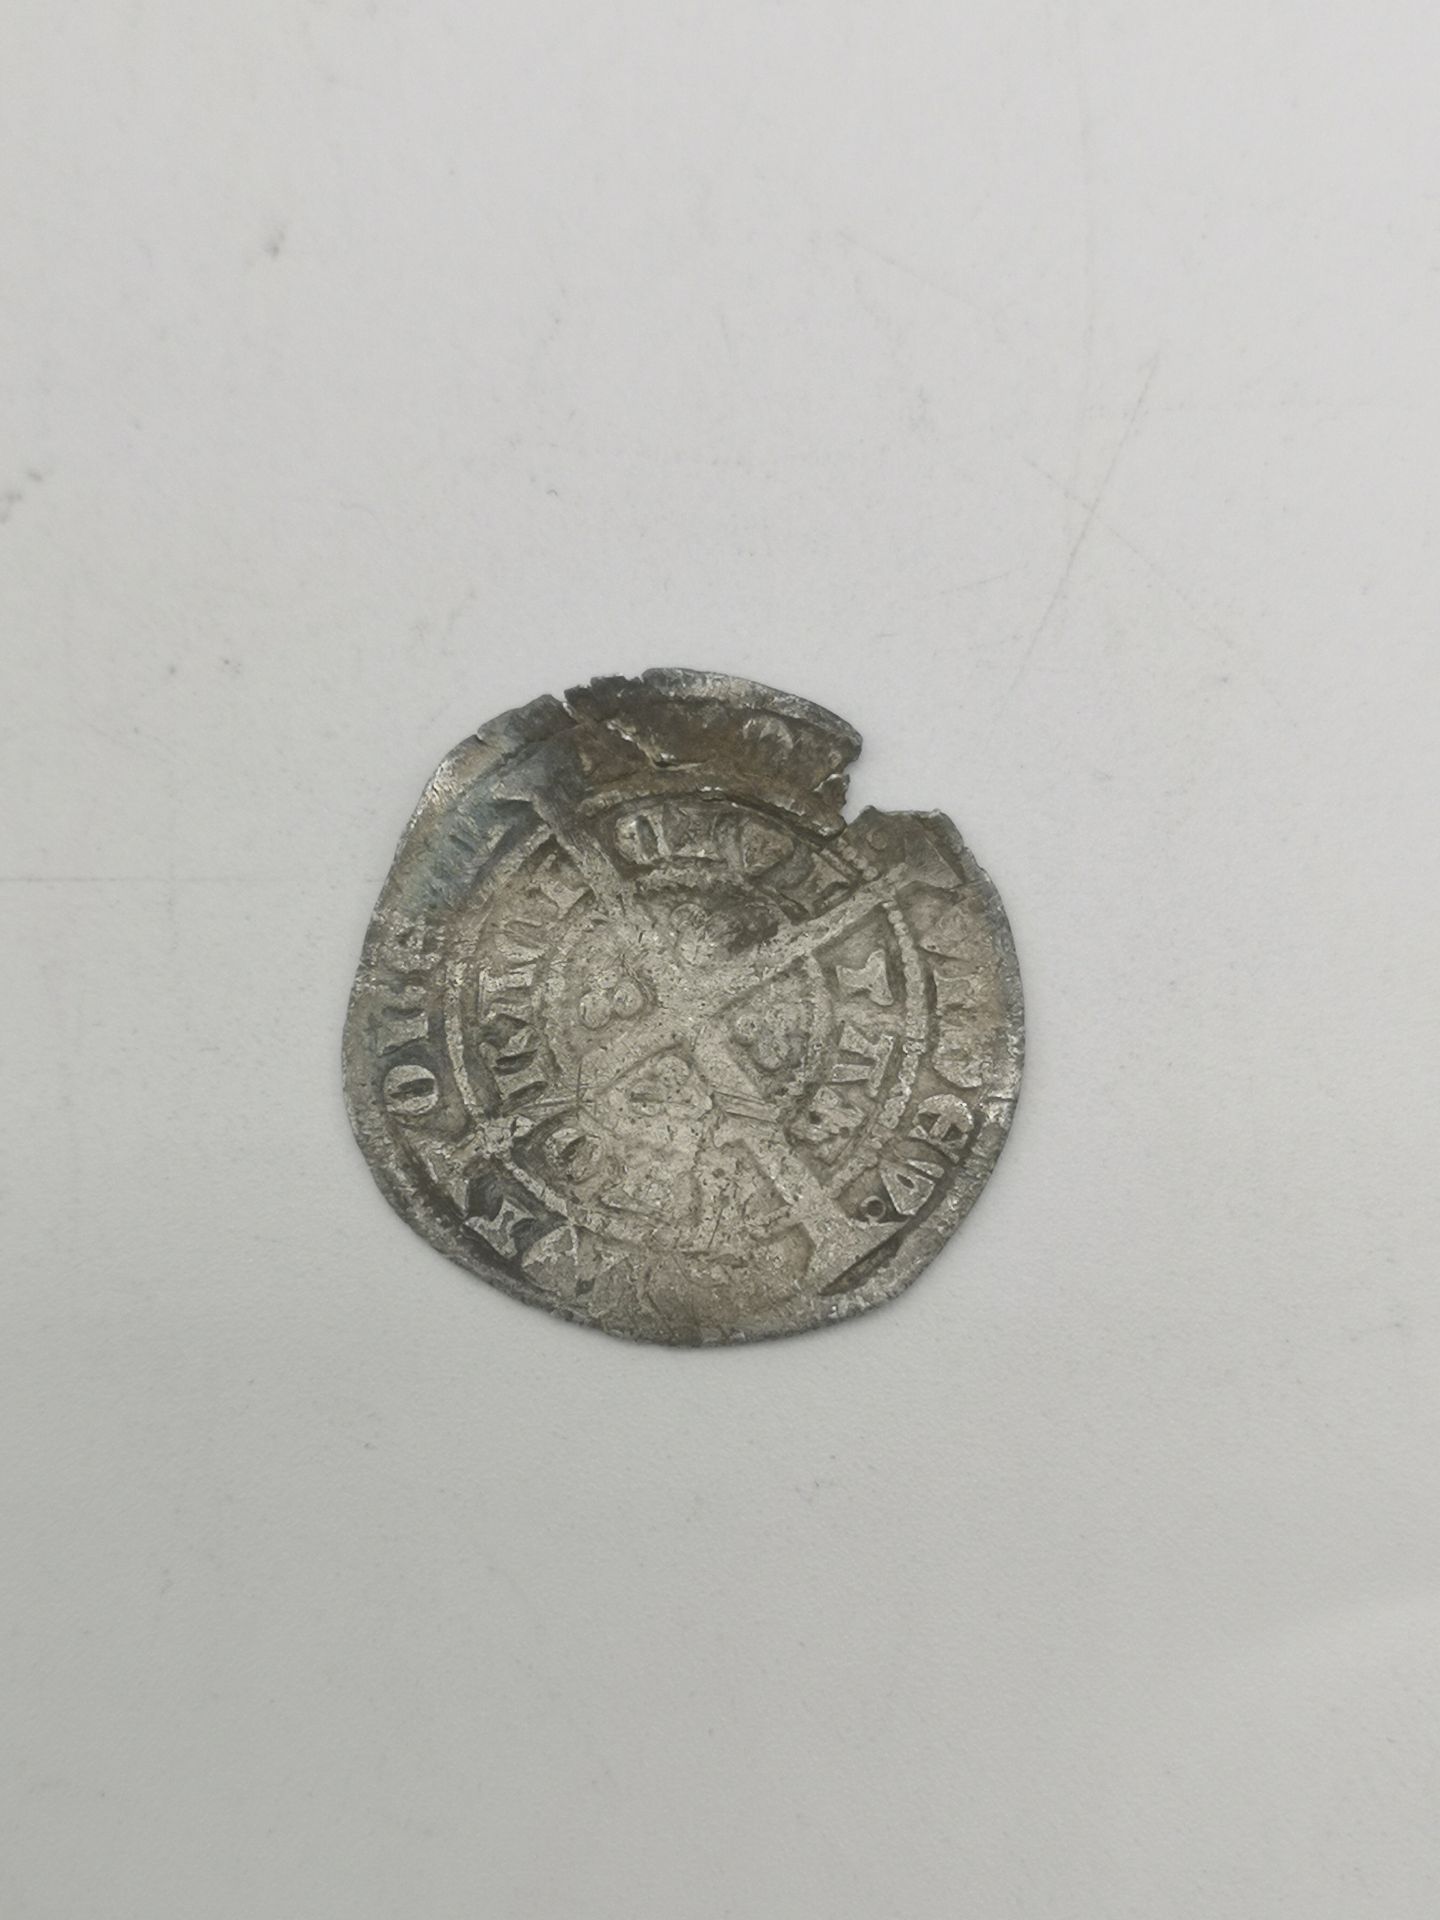 Edward III silver groat - Image 4 of 4